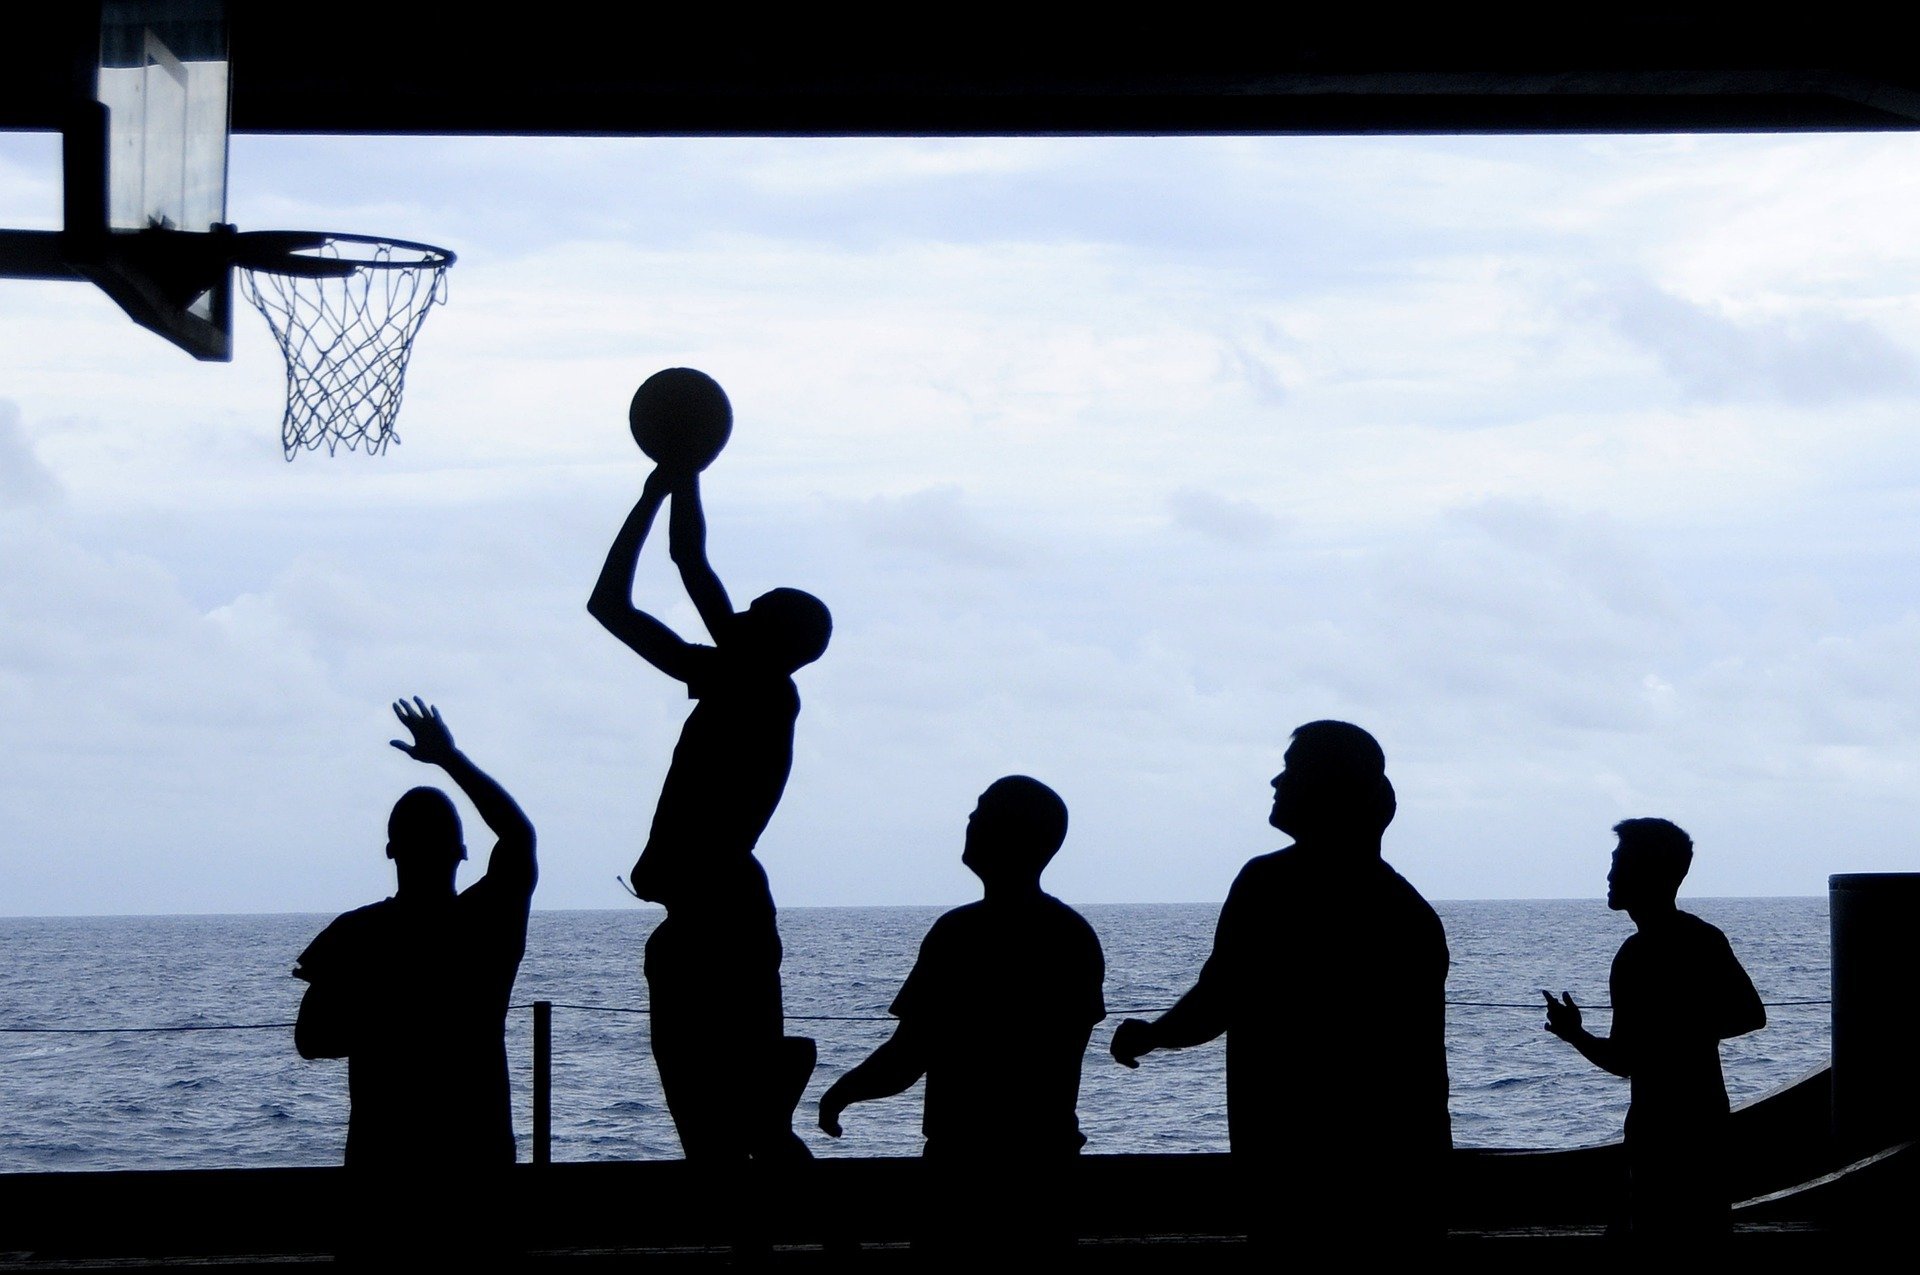 Existem muitas produções cinematográficas que envolvem o basquete em suas histórias. Confira alguns filmes que retratam basquete.